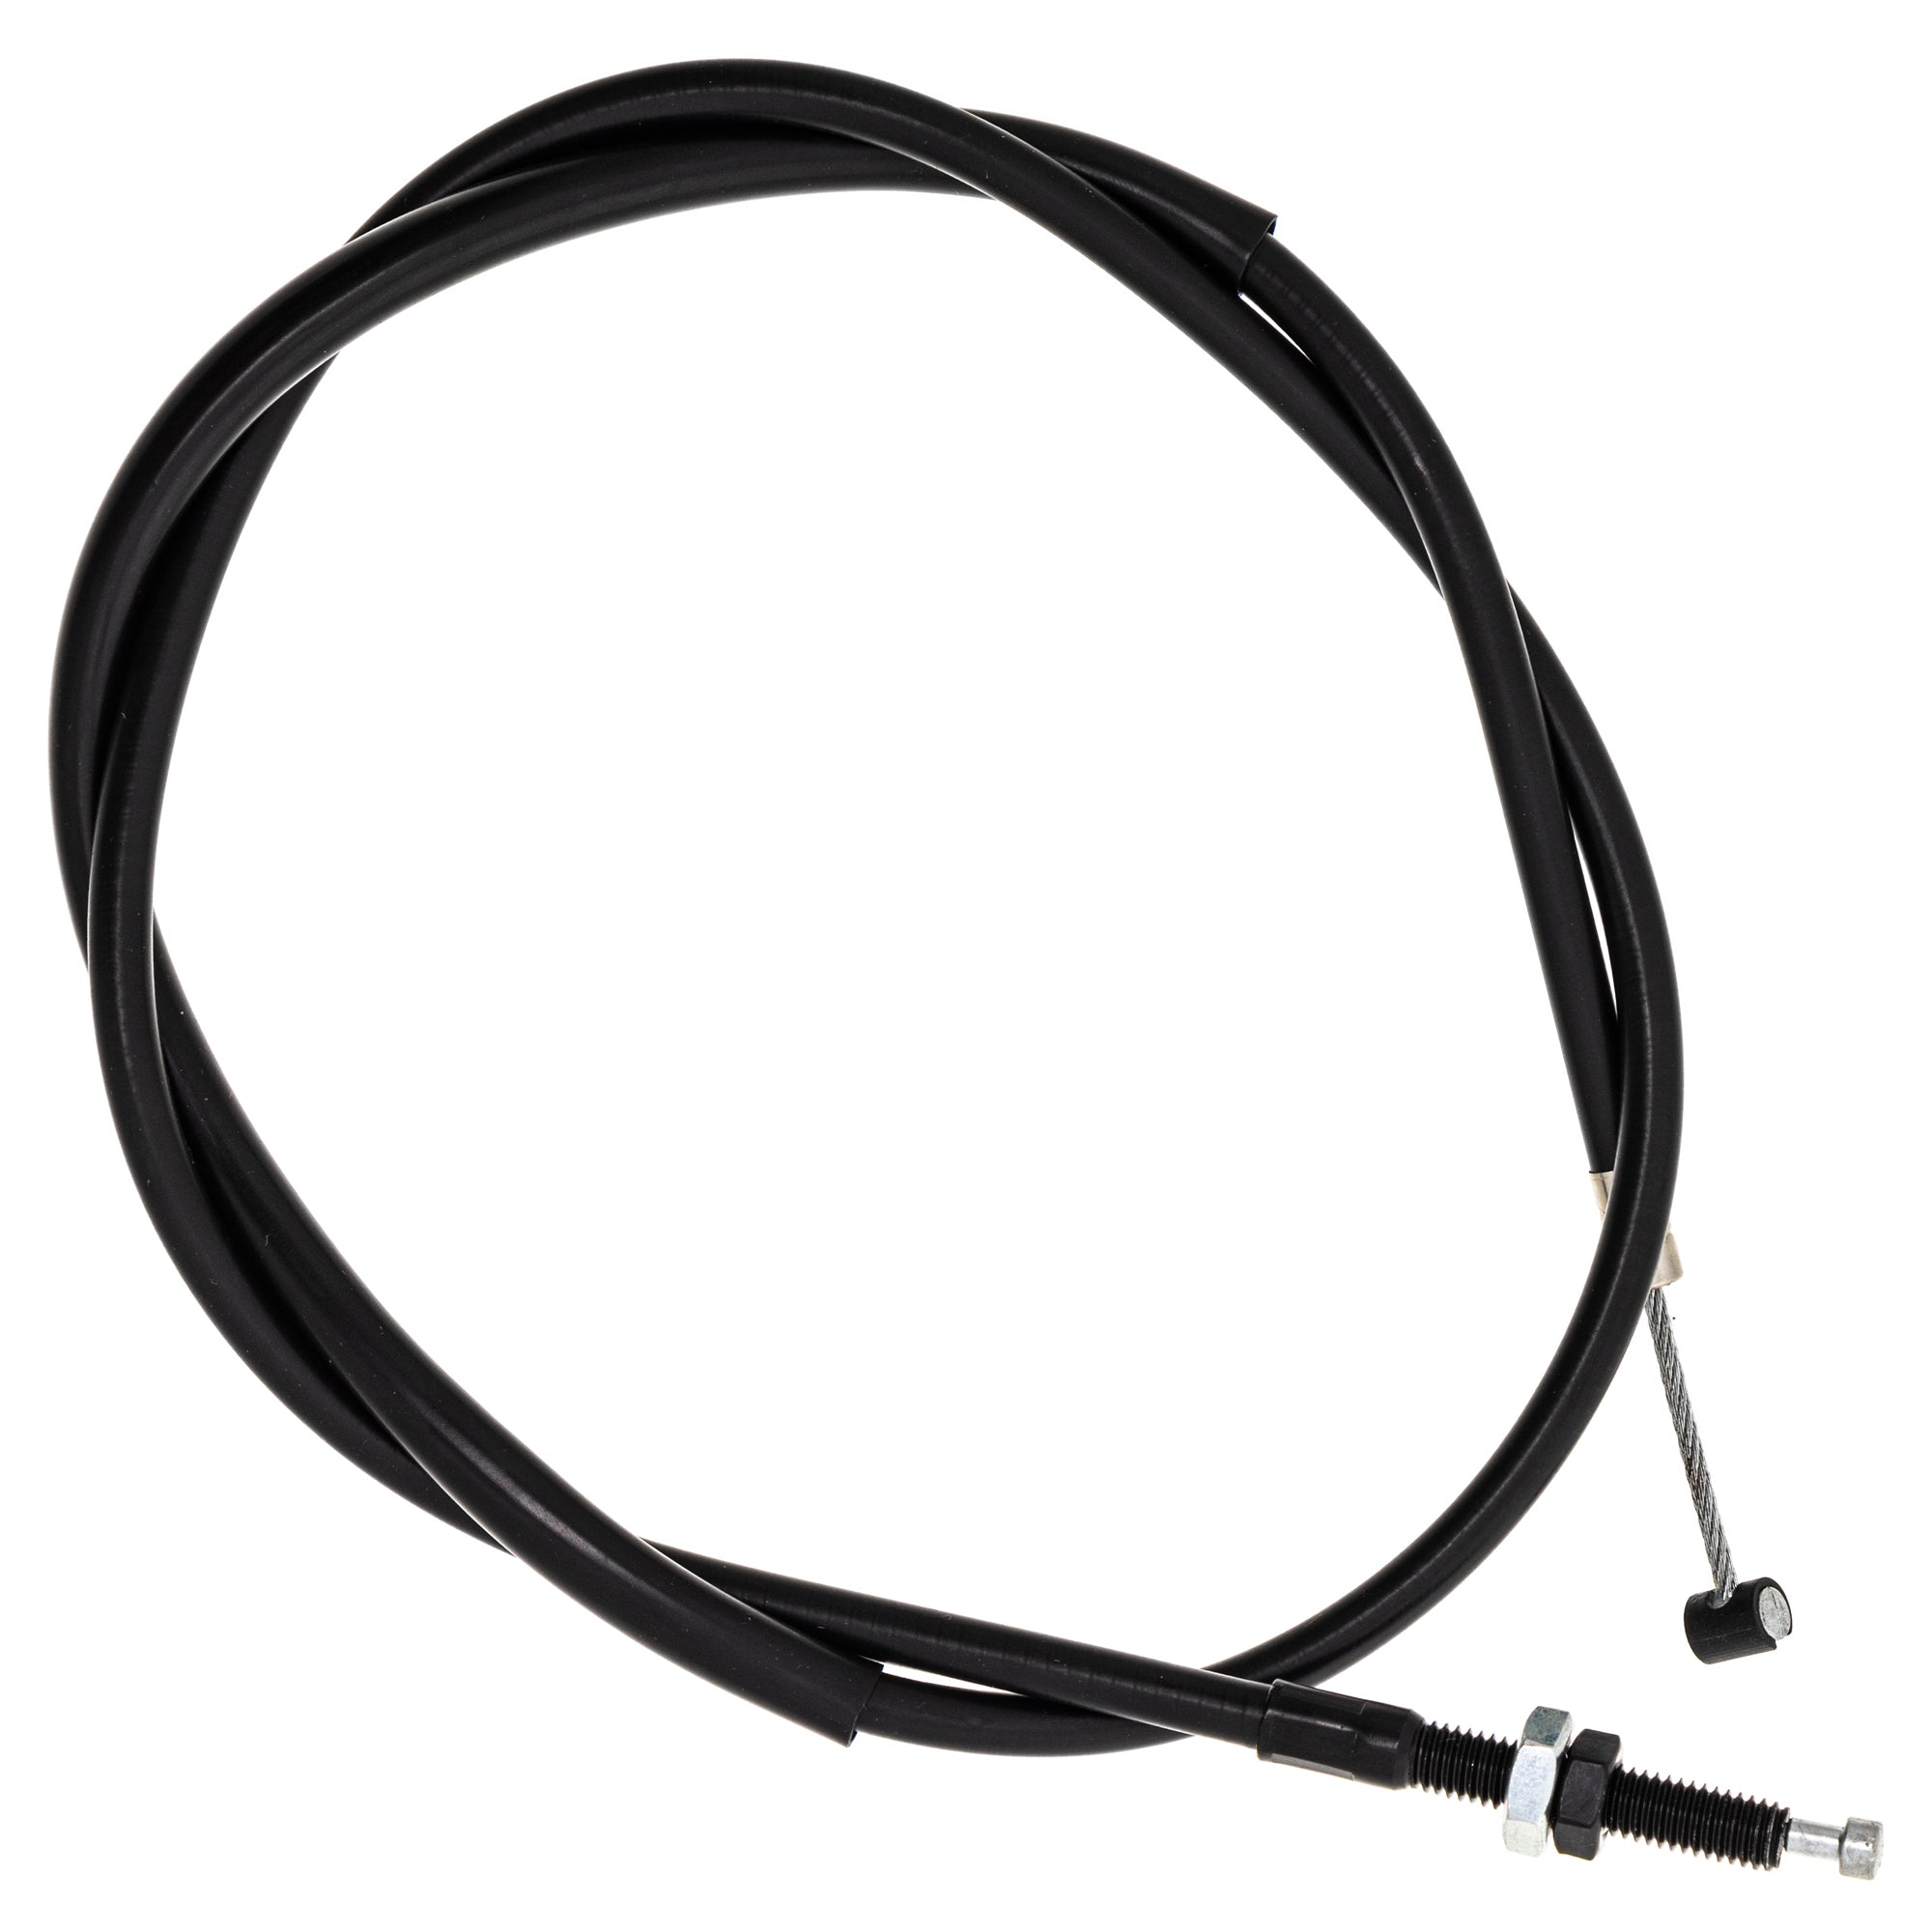 Clutch Cable for zOTHER CBR600F4i CBR600F4 NICHE 519-CCB2895L